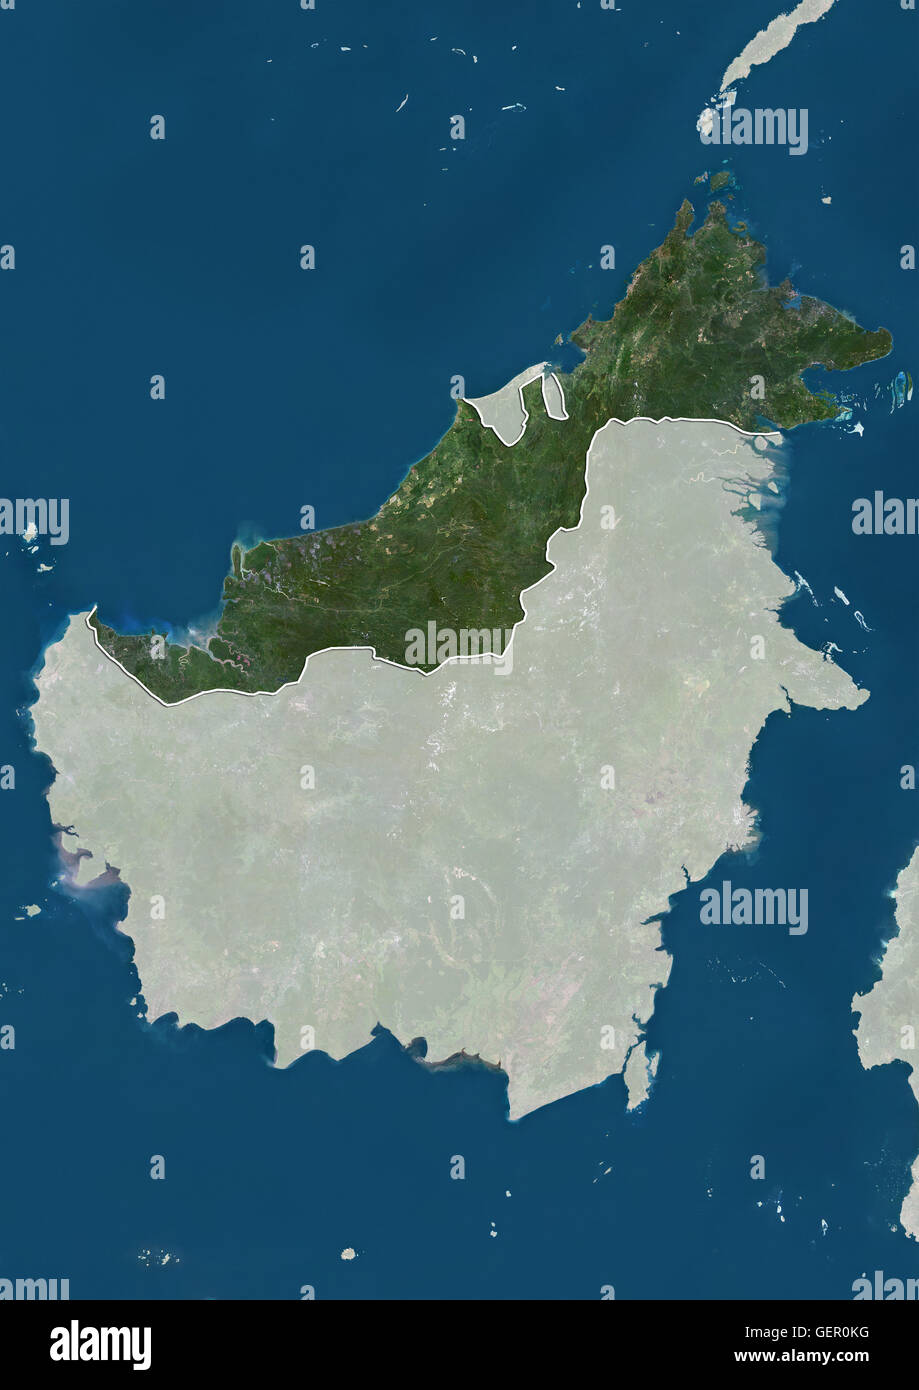 Vista satellitare della Malesia orientale stati di Sabah e Sarawak e territorio federale di Labuan sull'isola del Borneo (con i confini amministrativi e maschera). Questa immagine è stata elaborata sulla base dei dati acquisiti dai satelliti Landsat. Foto Stock